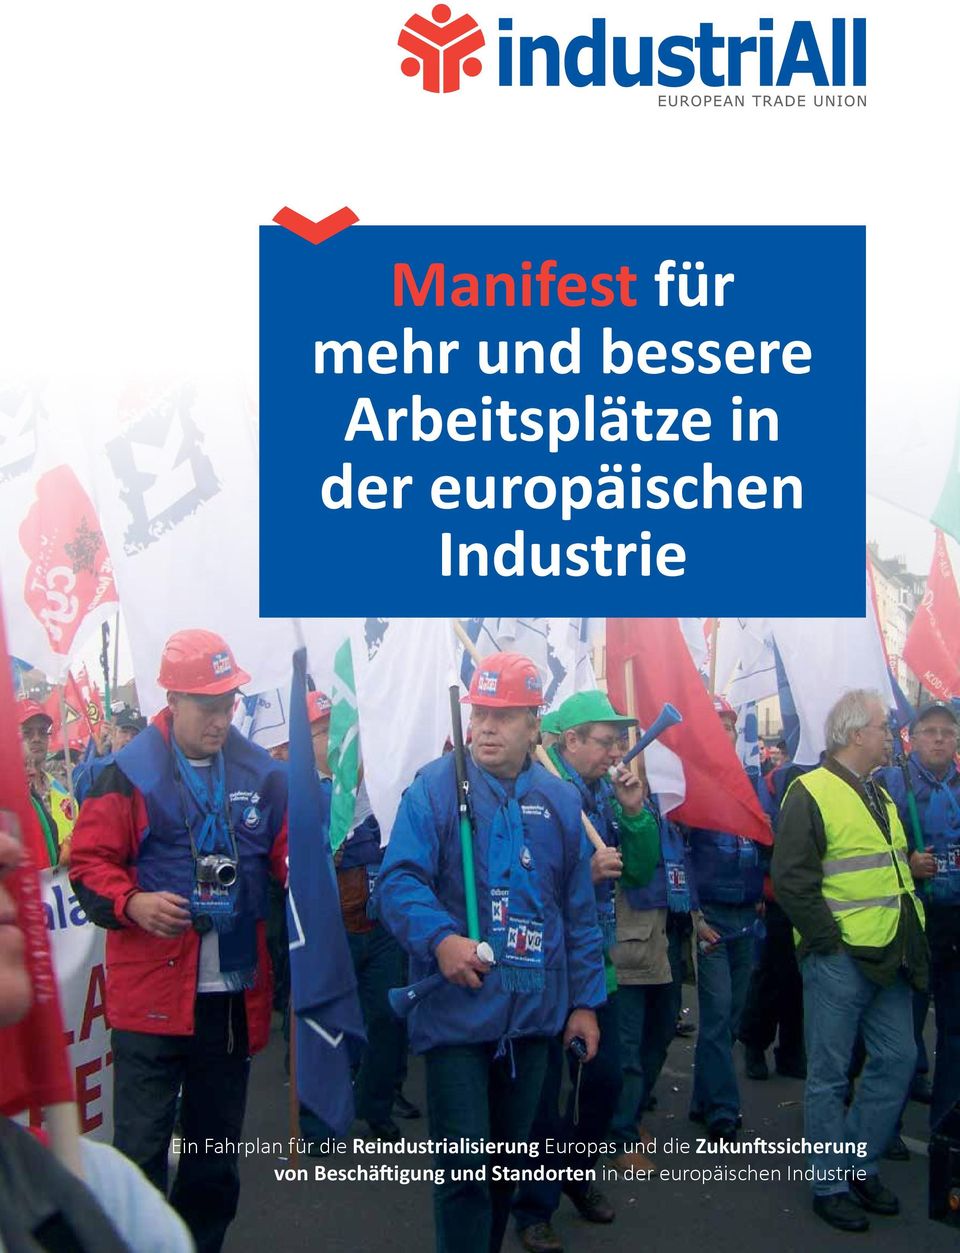 Reindustrialisierung Europas und die